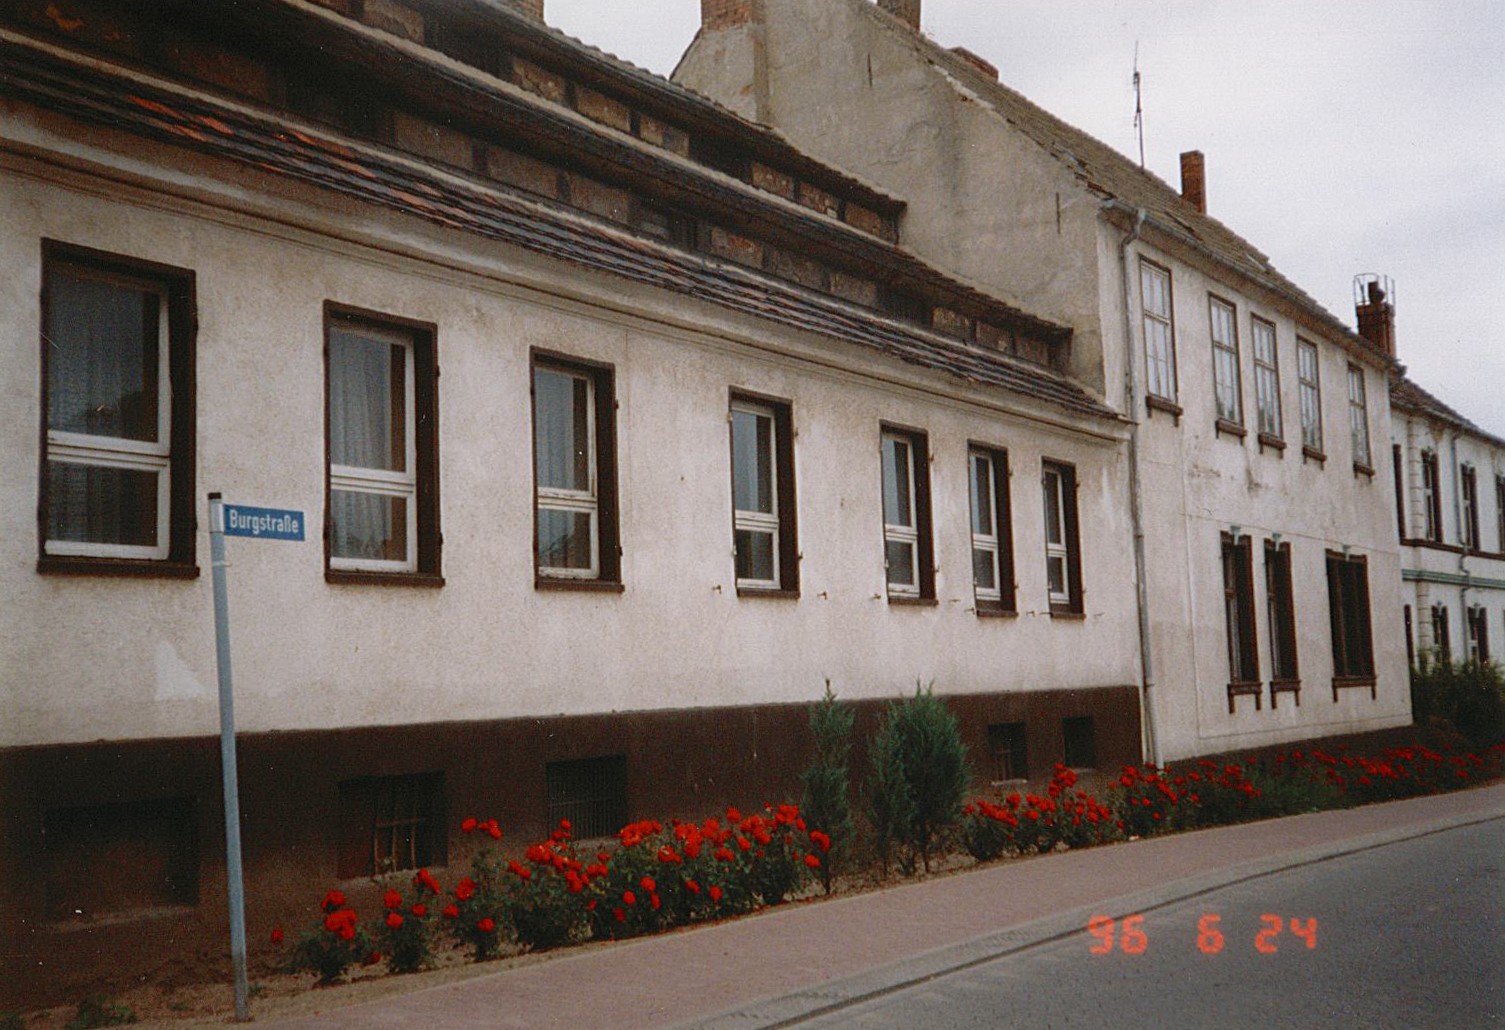 Stadtansicht Wolmirstedt - Junkerhof, Burgstraße, 24.06.1996 (Museum Wolmirstedt RR-F)